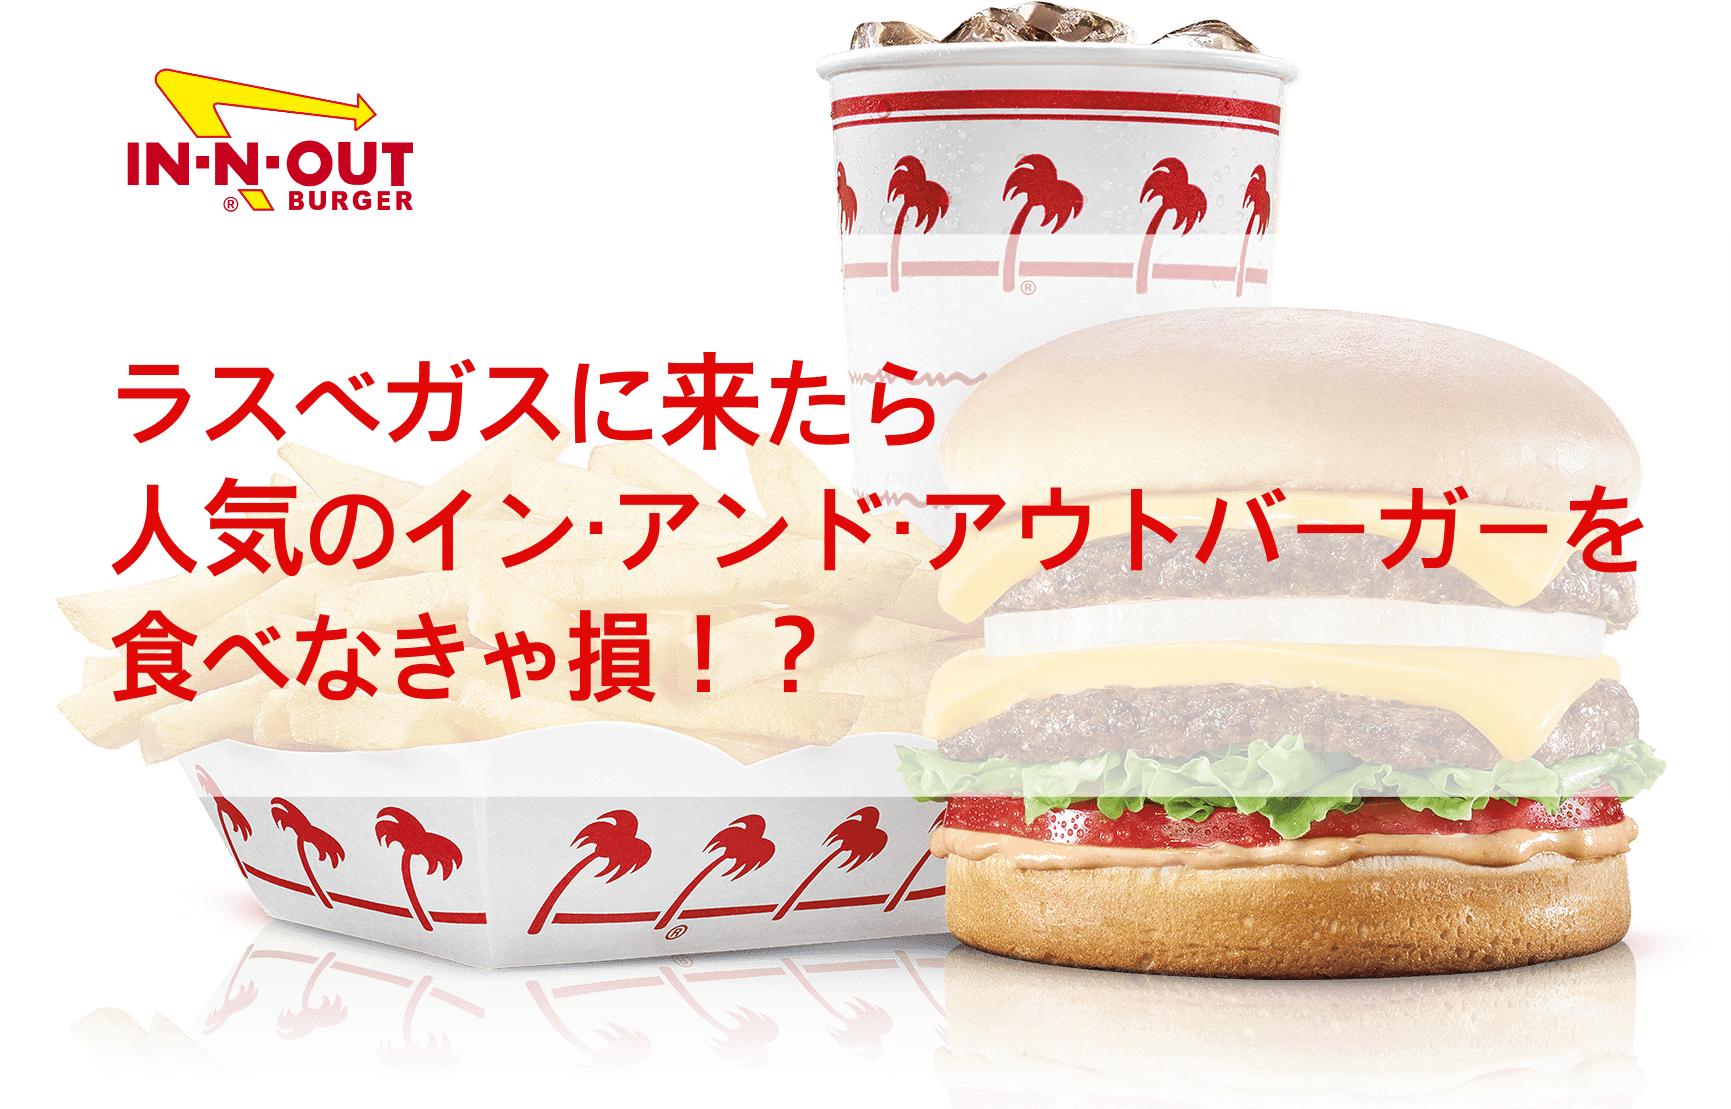 ラスベガスで人気のインアンドアウトバーガーin N Out Burgerを食べなきゃ損 - In-n-out Burger (1732x1120), Png Download